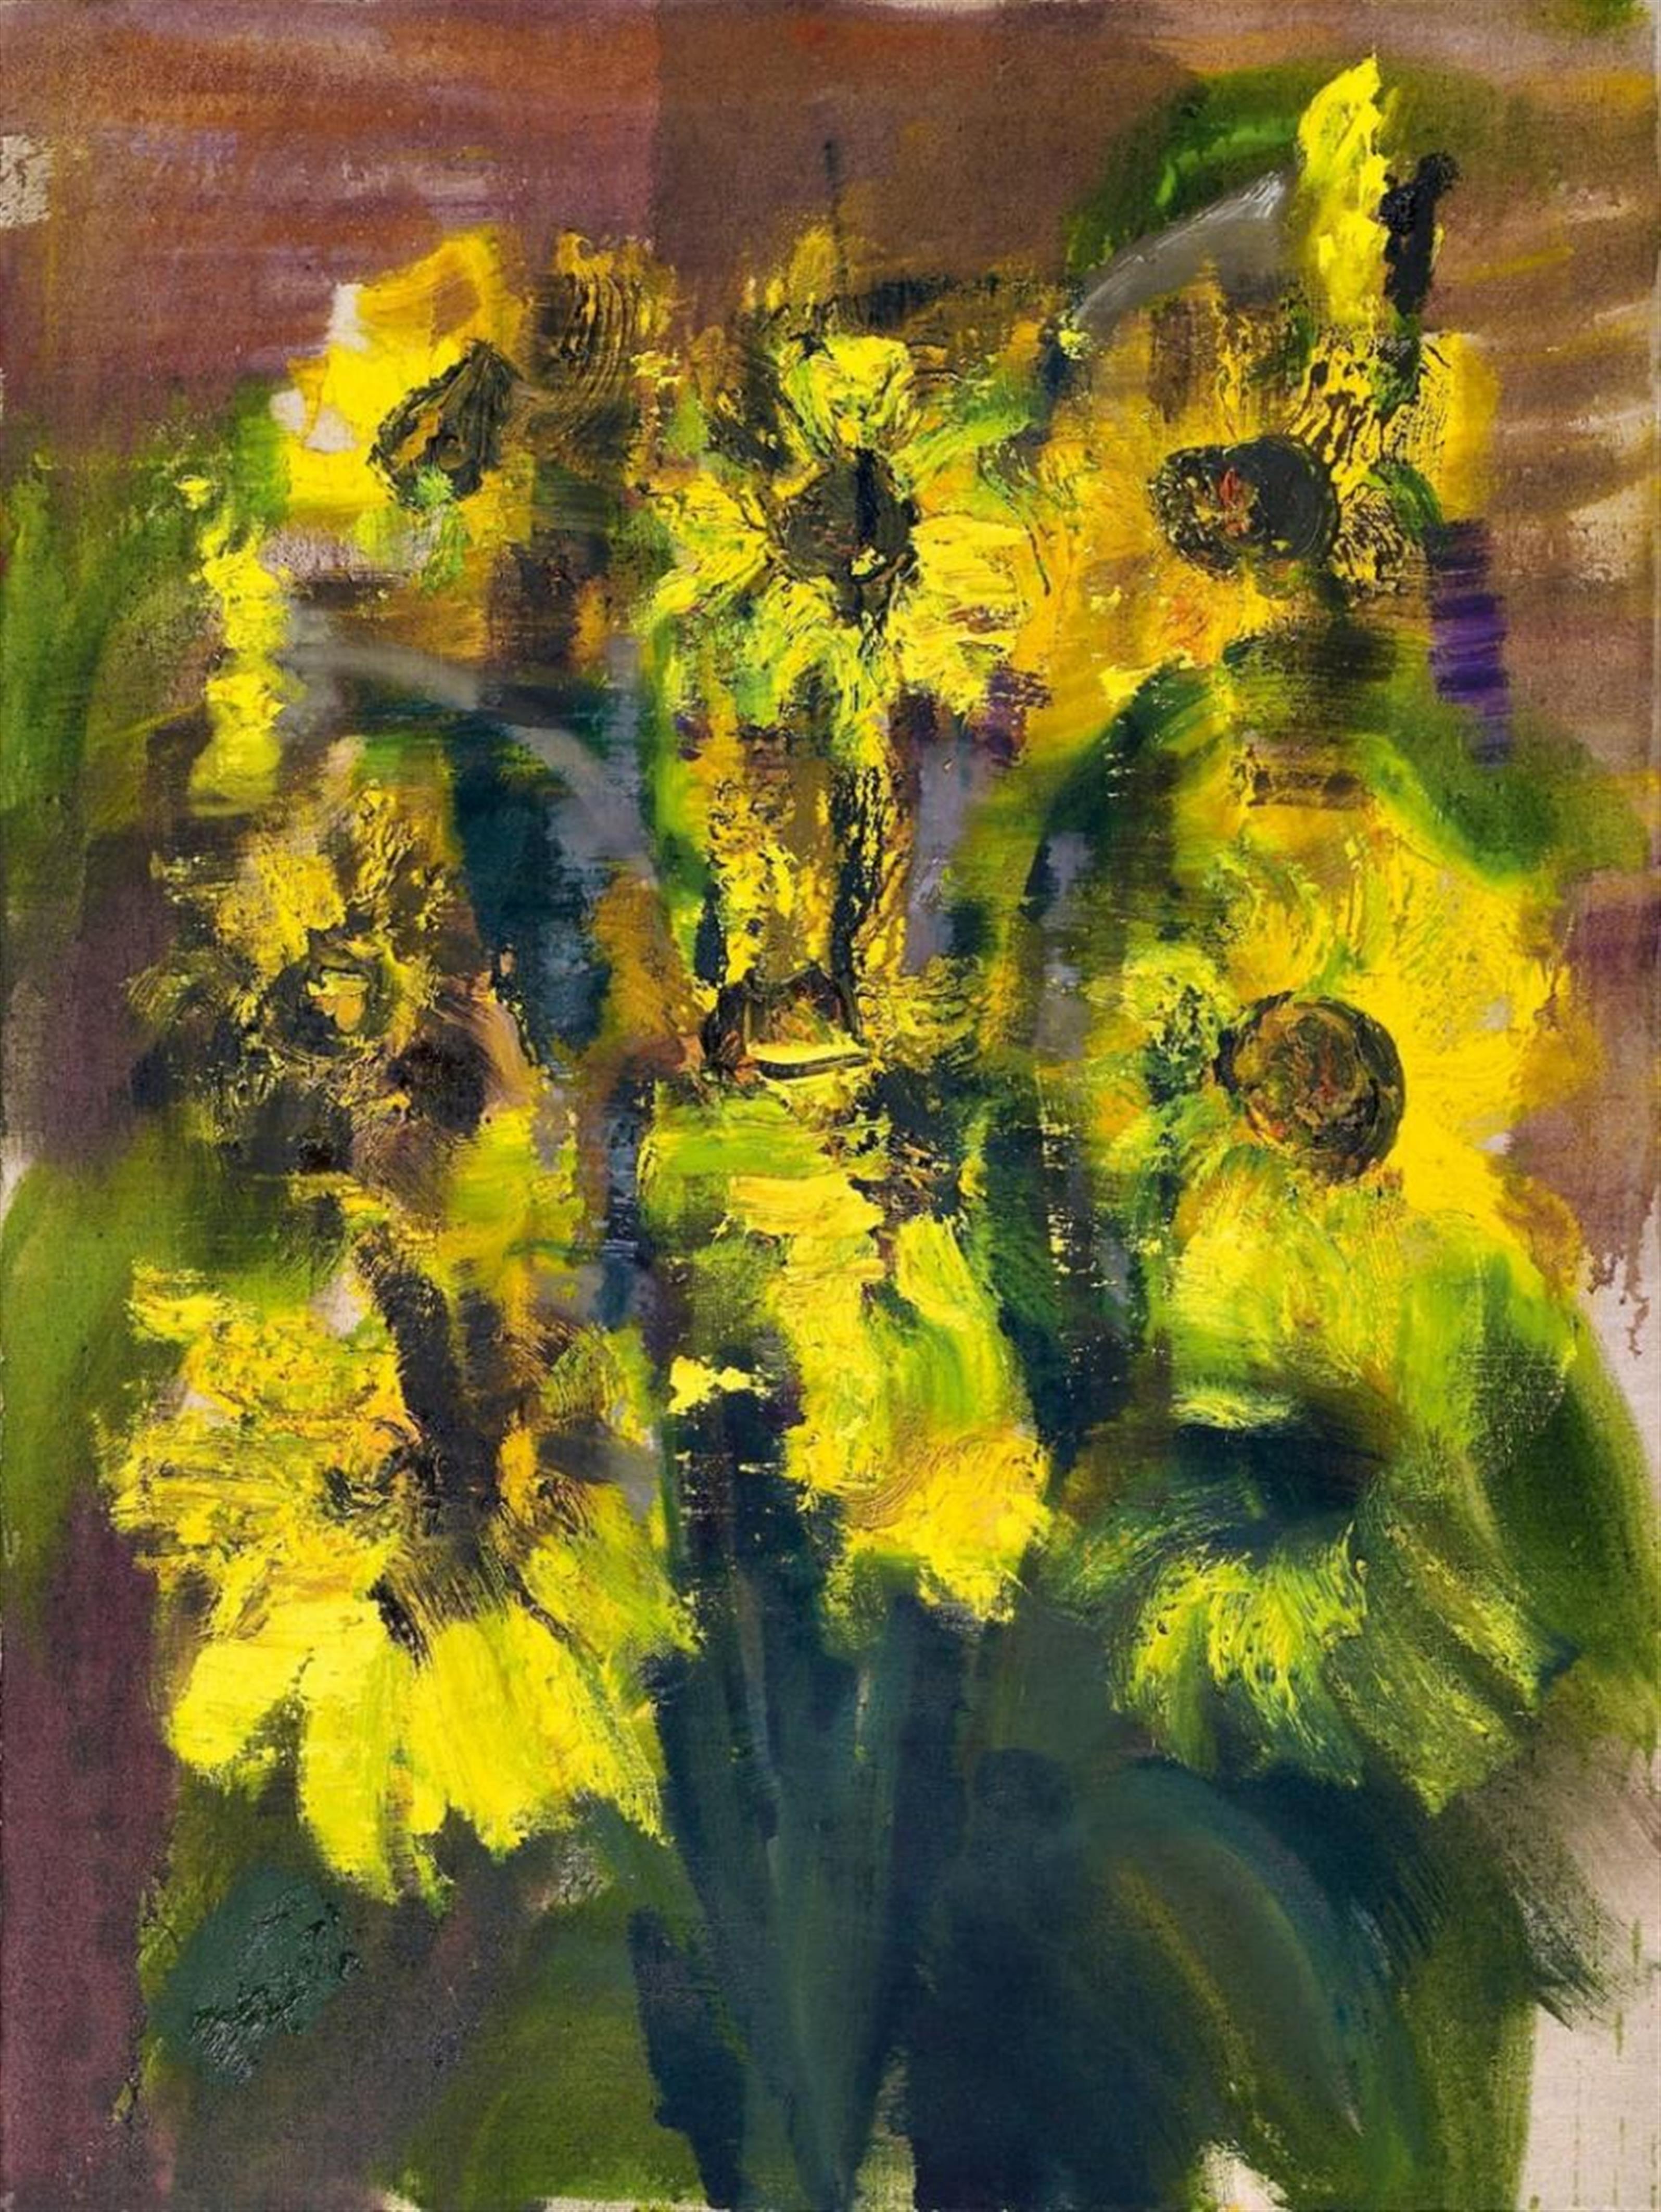 Rainer Fetting - Sonnenblumen (Sun Flowers) - image-1